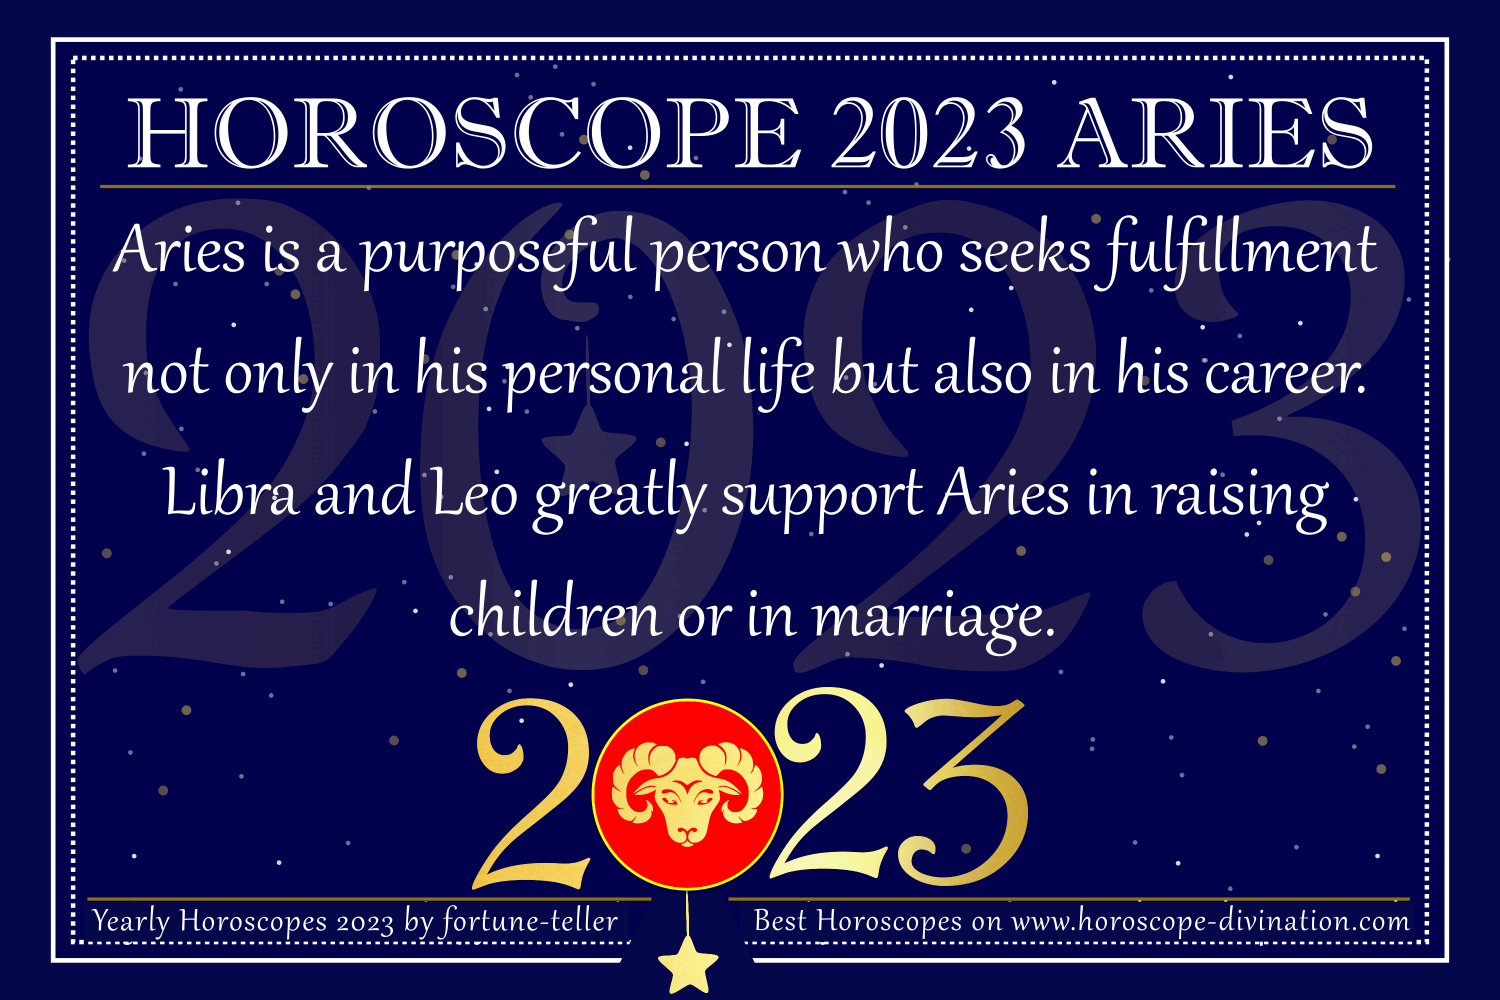 aries horoscope new year 2023